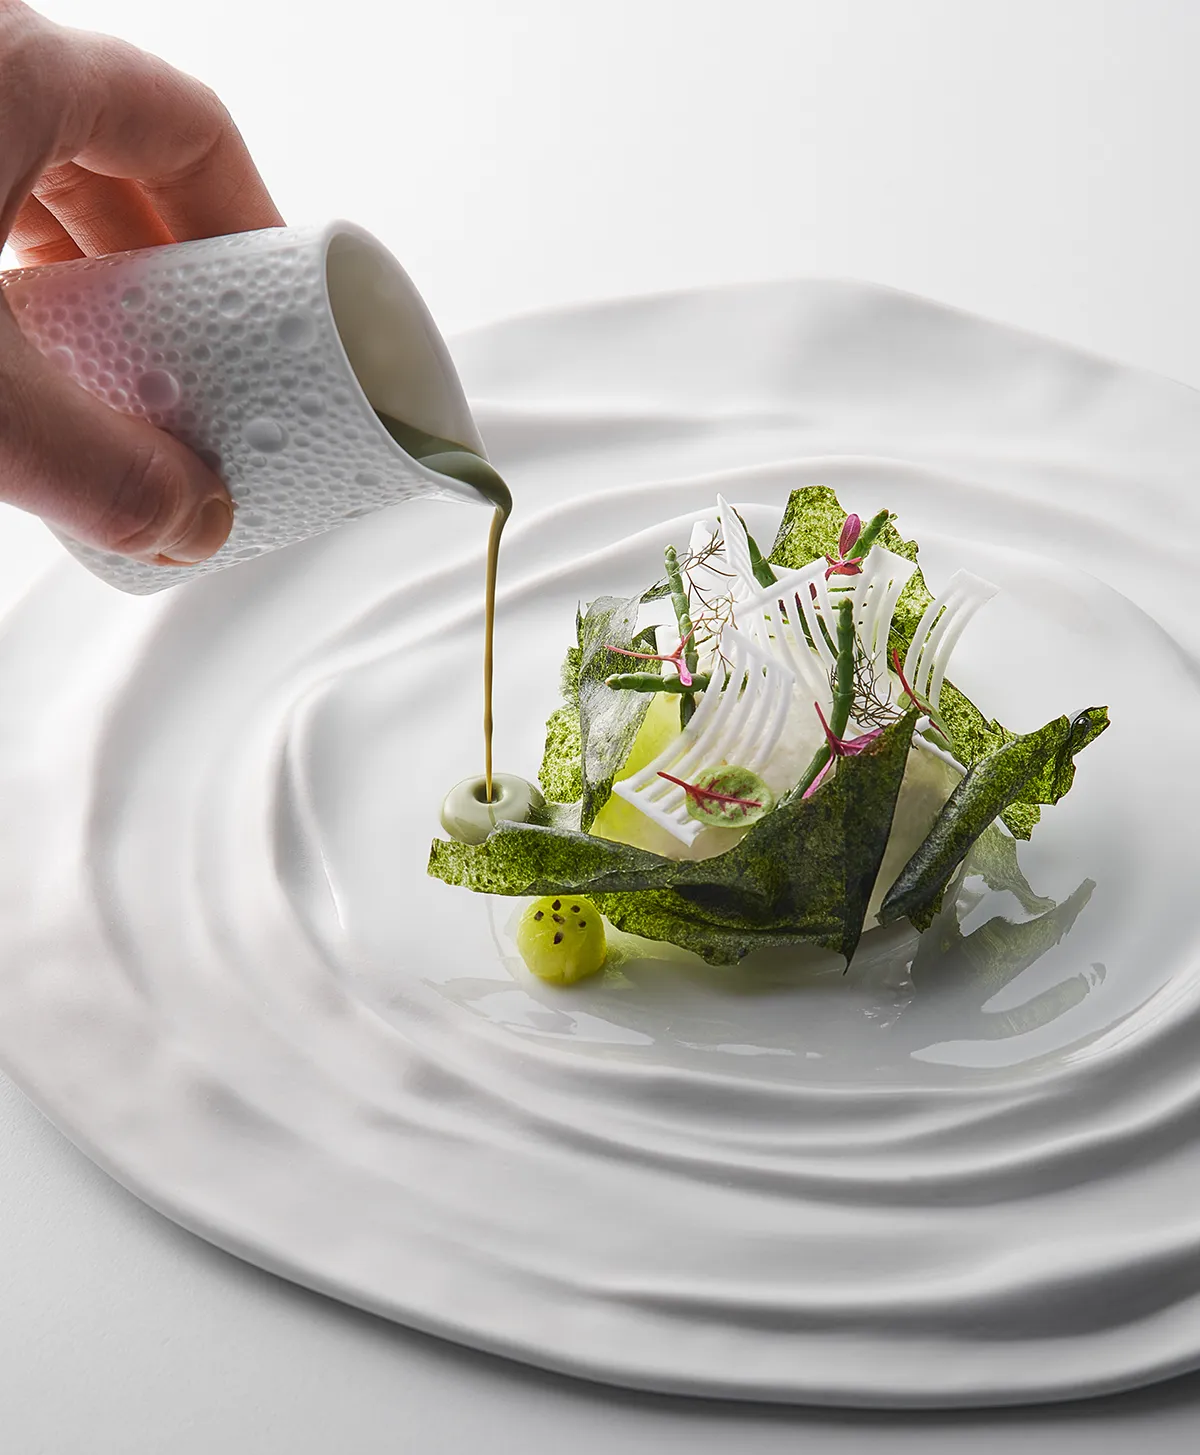 restaurant L’Oiseau Blanc confirme deuxième étoile Guide Michelin pour troisième année consécutive